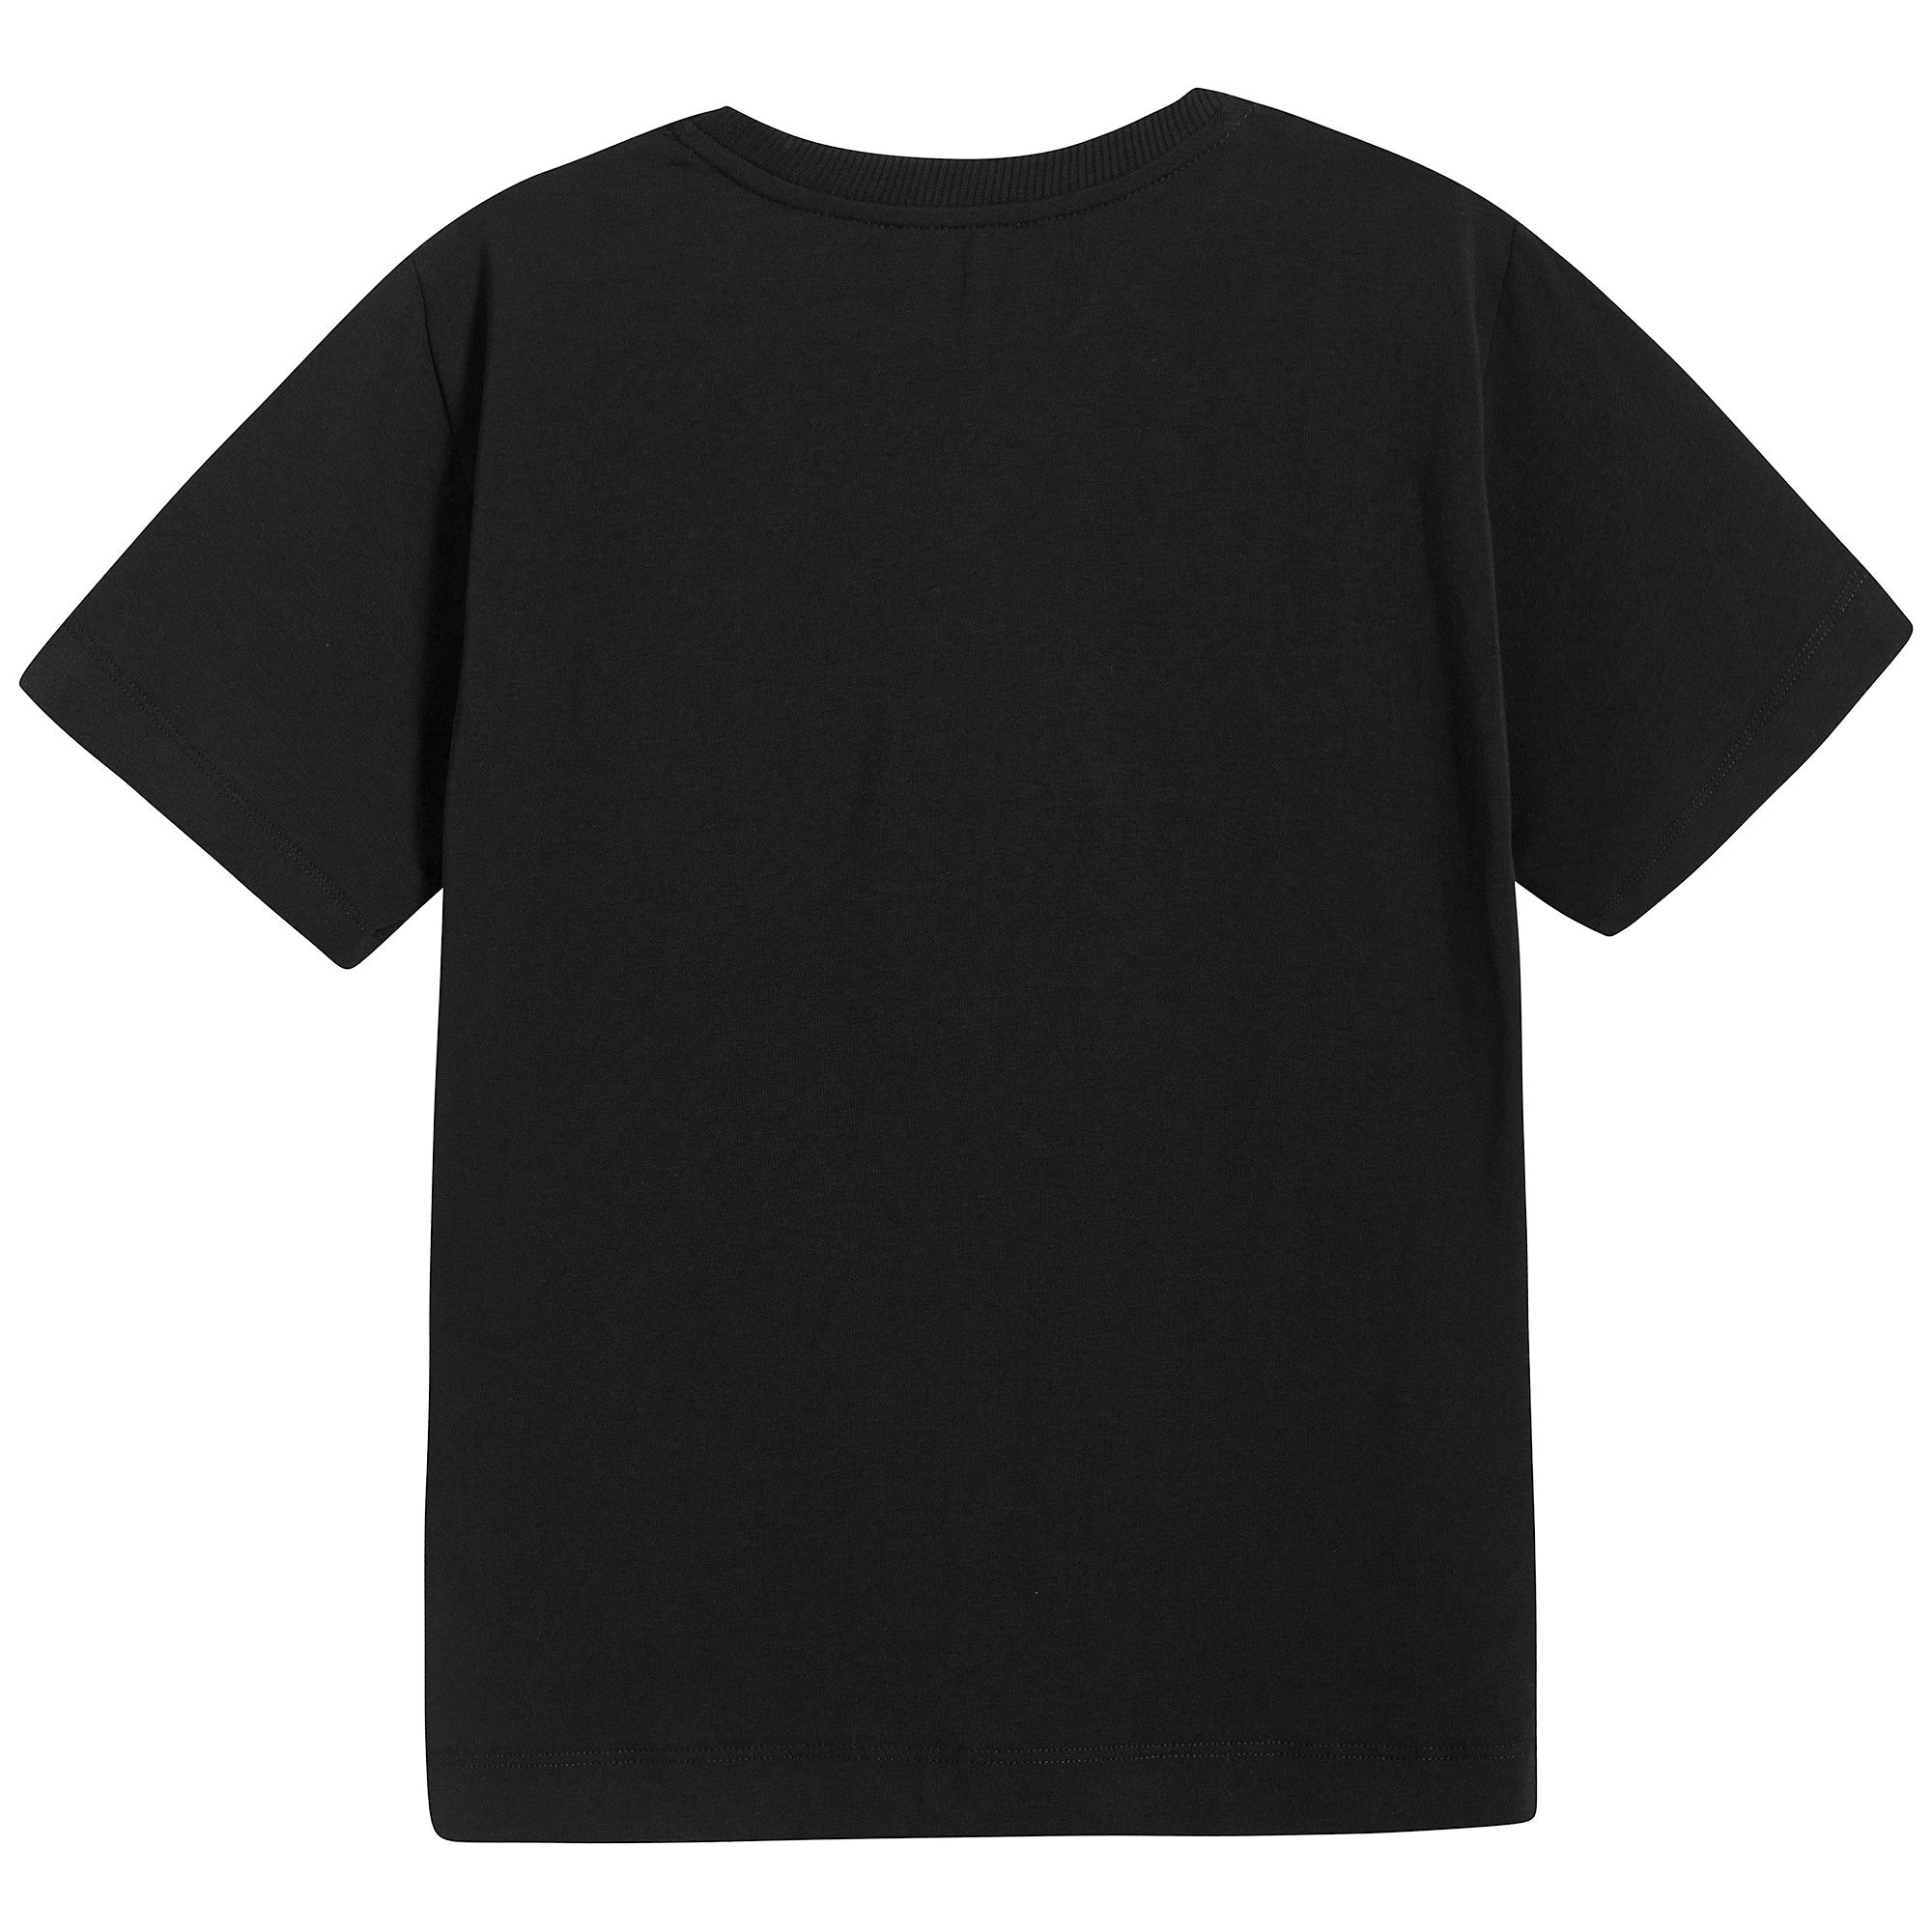 Boys & Girls Black Cotton T-shirt